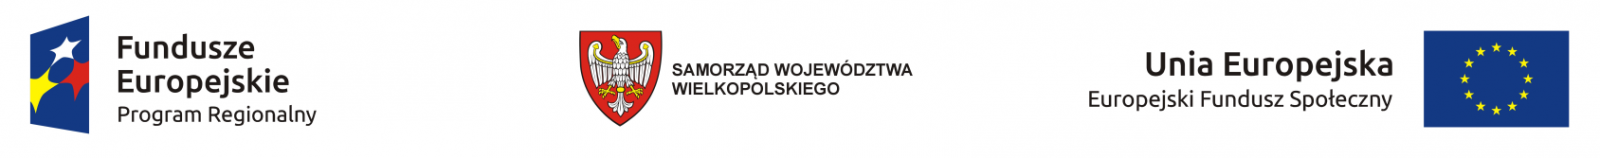 Logotypy projektu, od lewej Fundusze Europejskie Program regionalny, Samorząd Województwa wielkopolskiego, flaga Unii Europejskiej Europejski Fundusz Społeczny